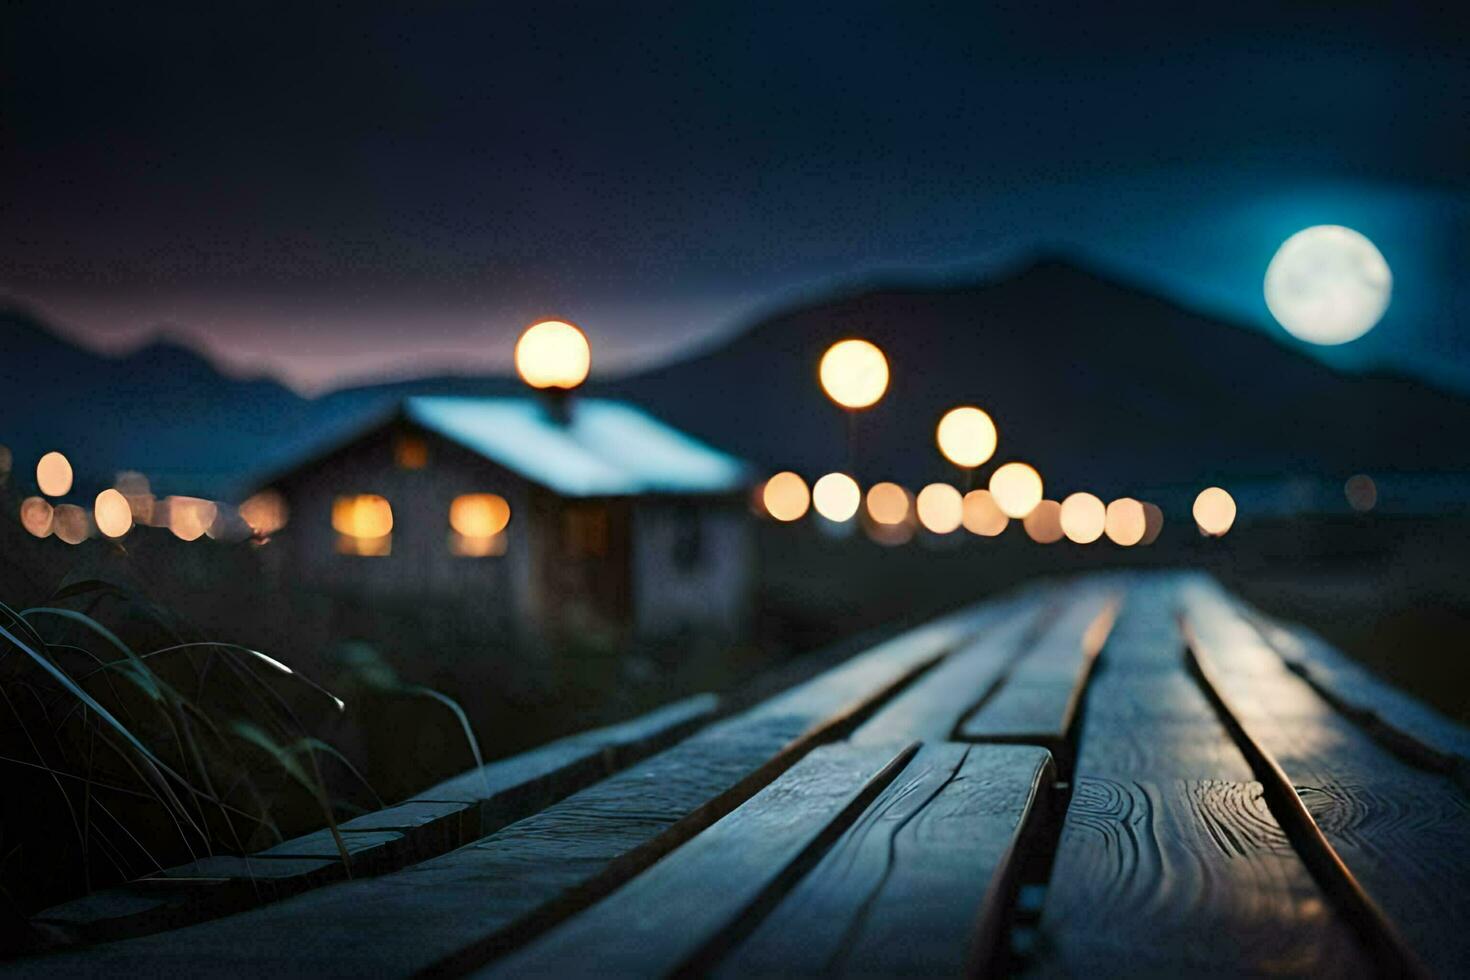 un de madera paseo marítimo con luces en eso a noche. generado por ai foto